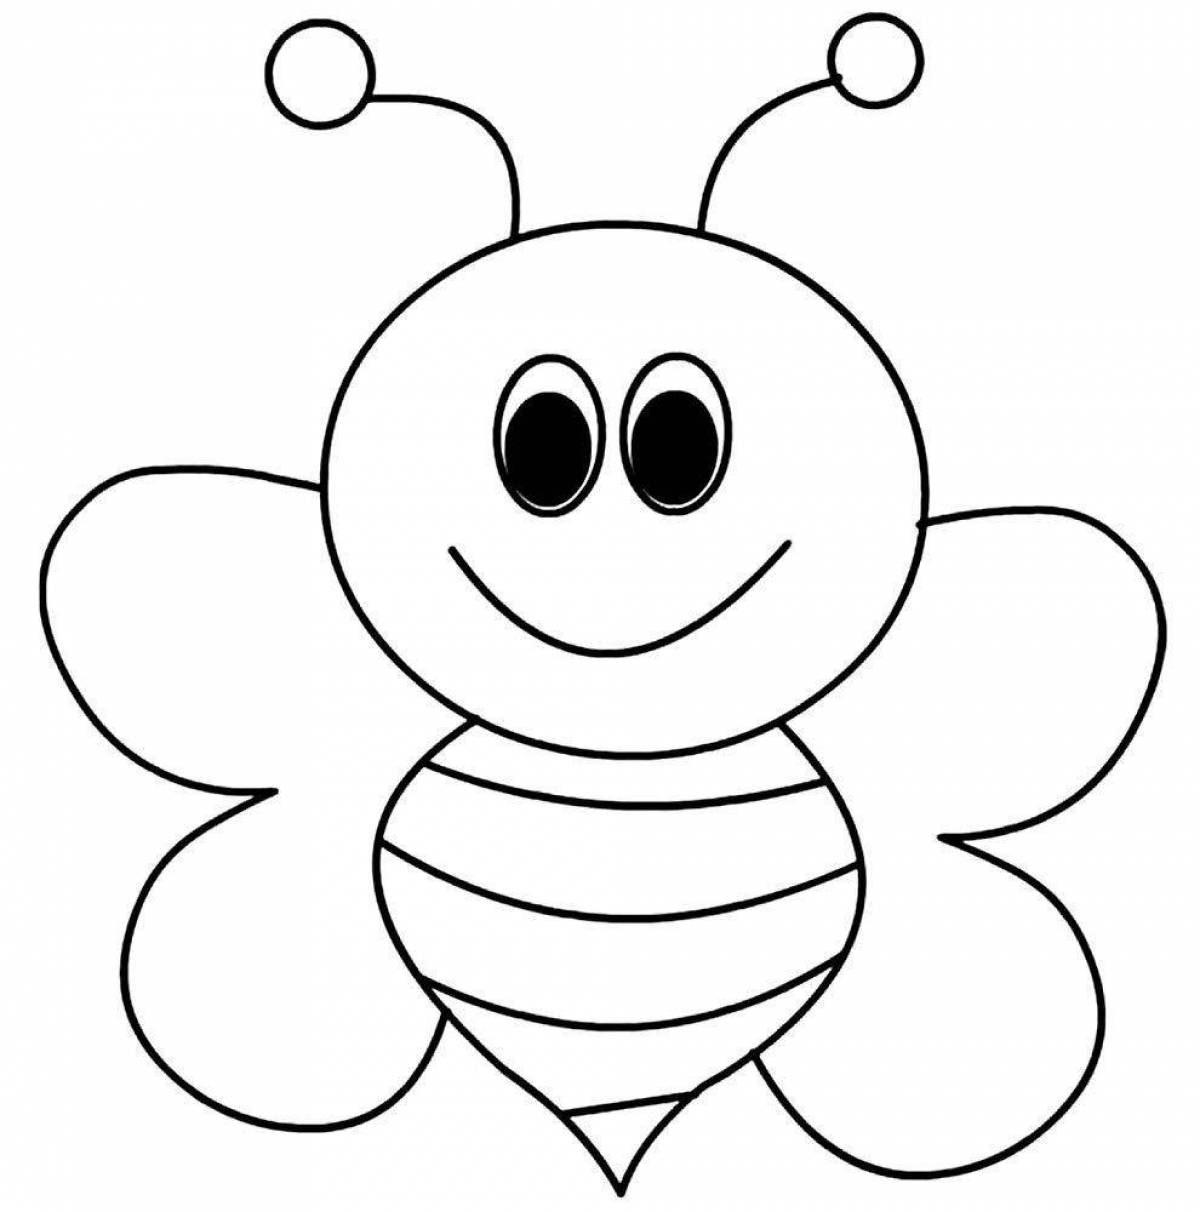 Юмористическая пчела-раскраска для детей